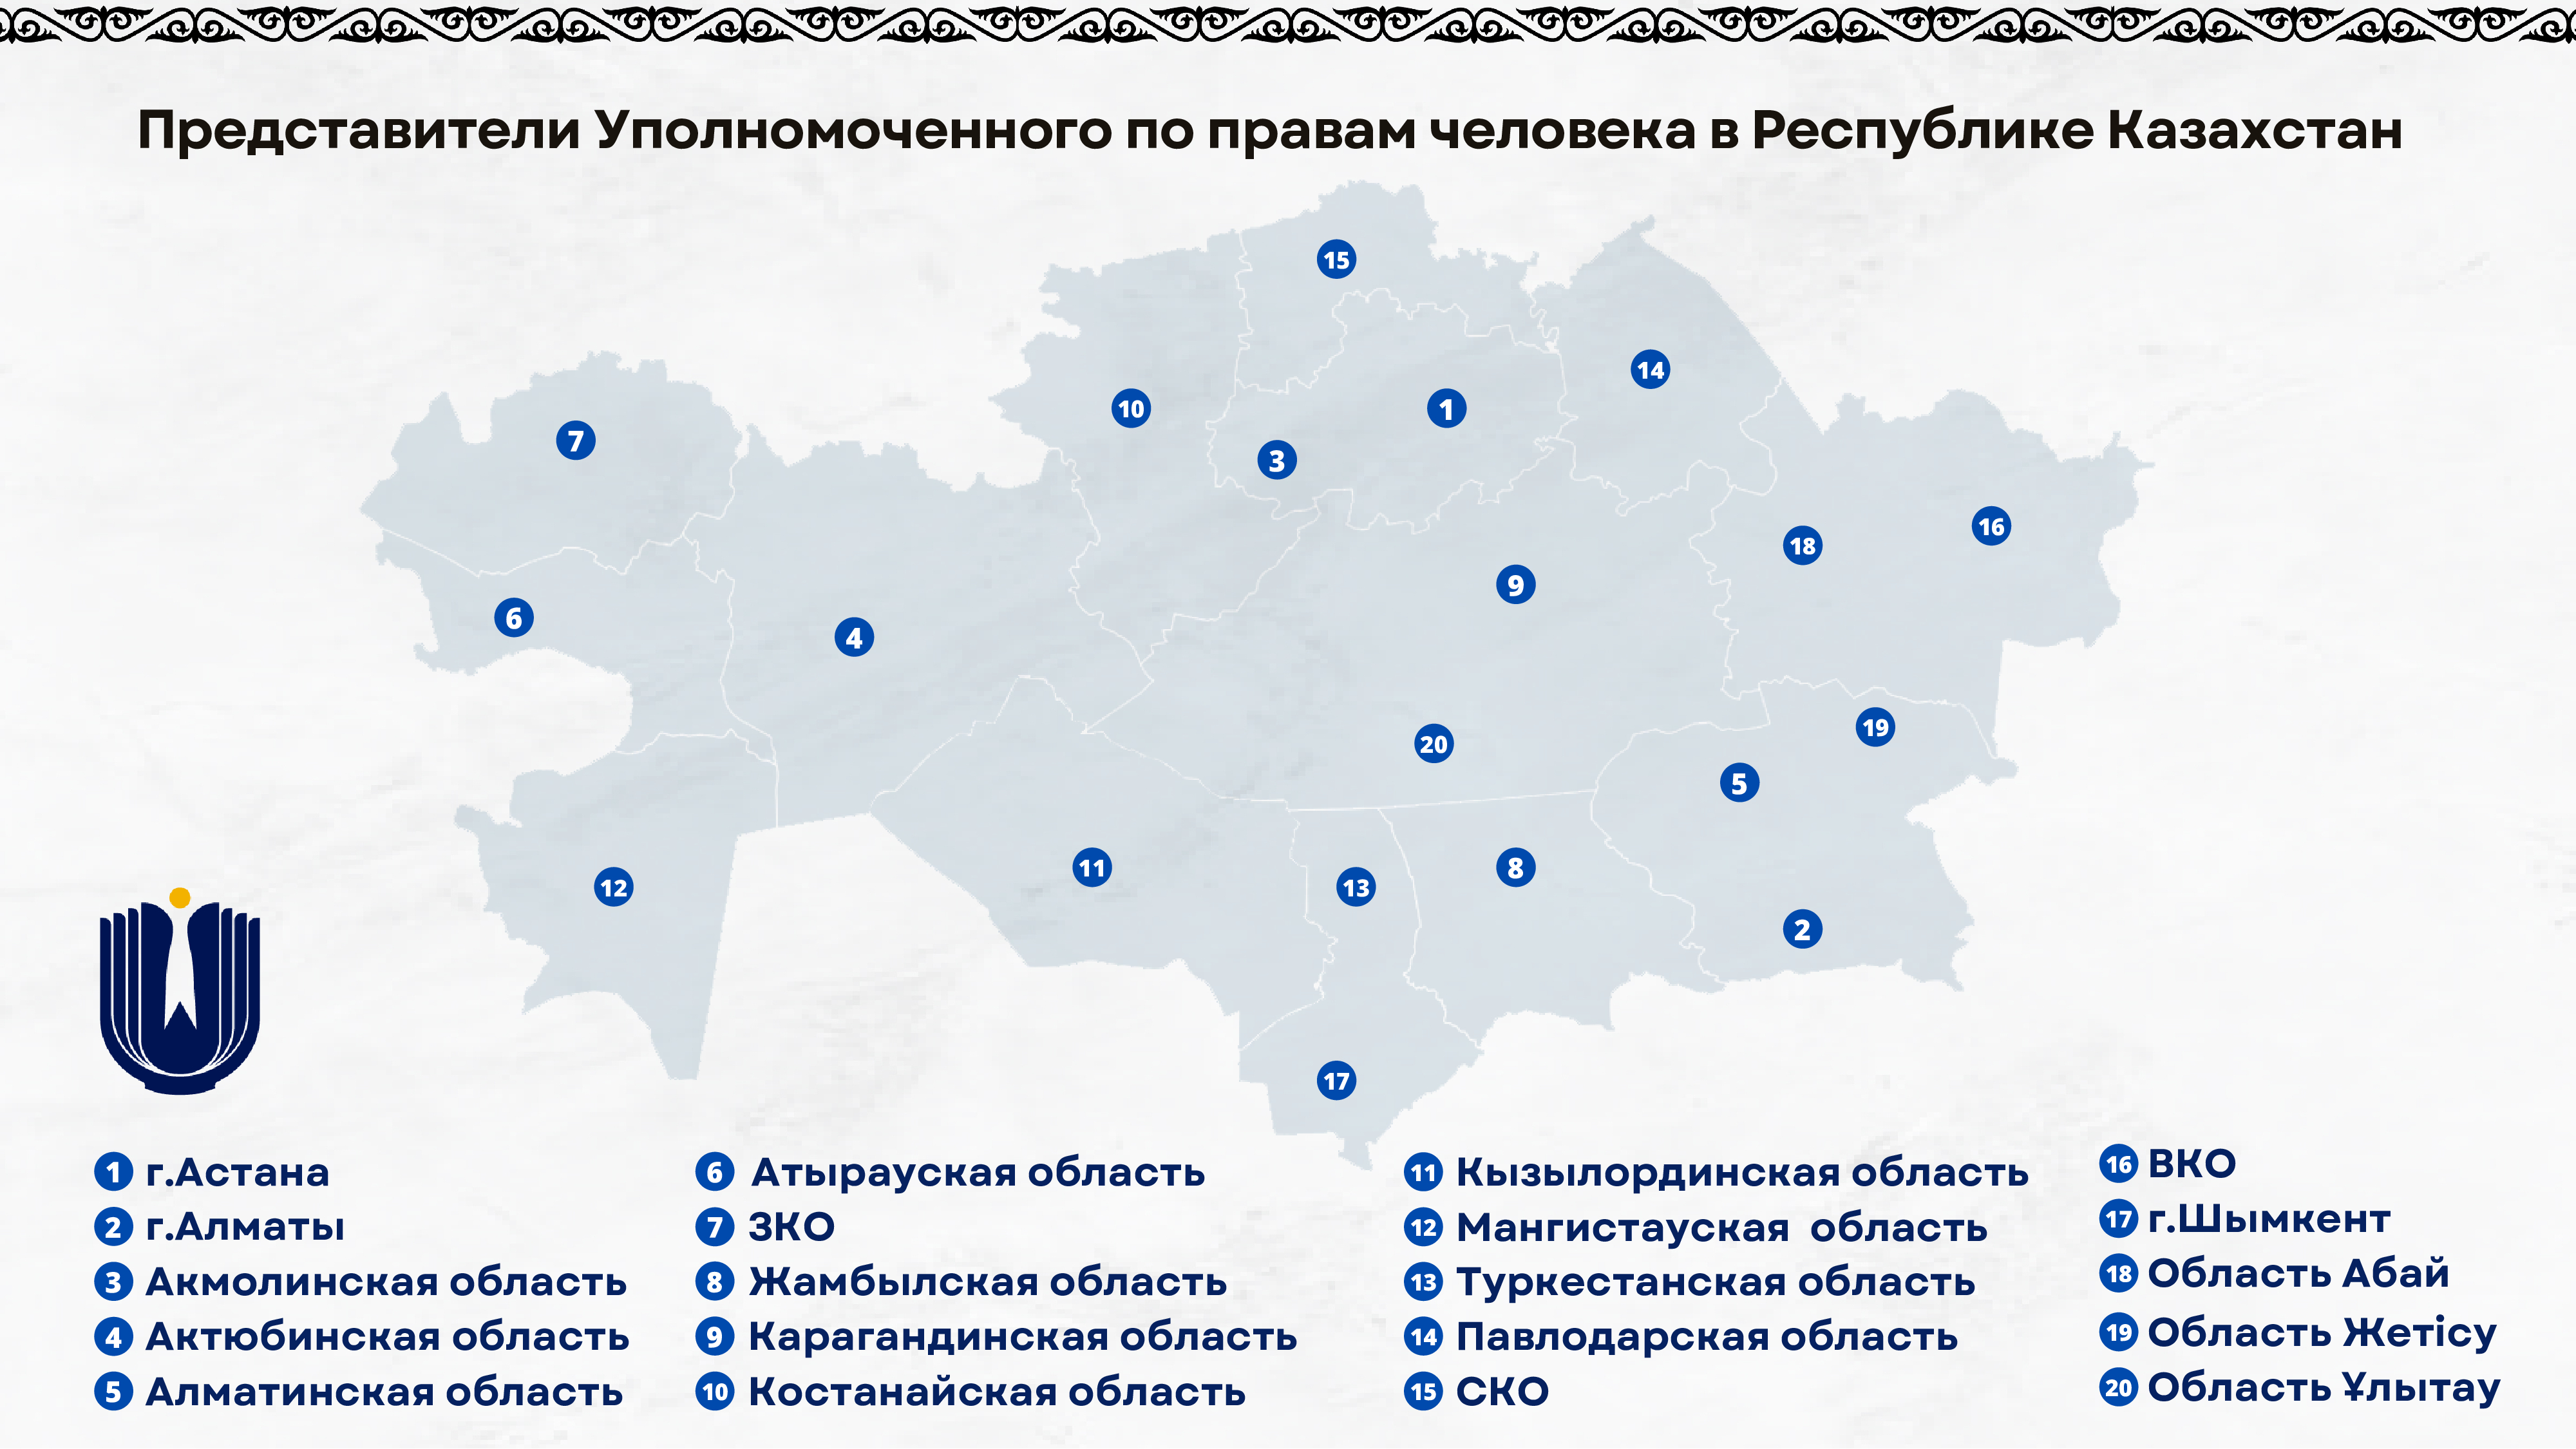 В регионах назначены представители Уполномоченного по правам человека в Республике Казахстан